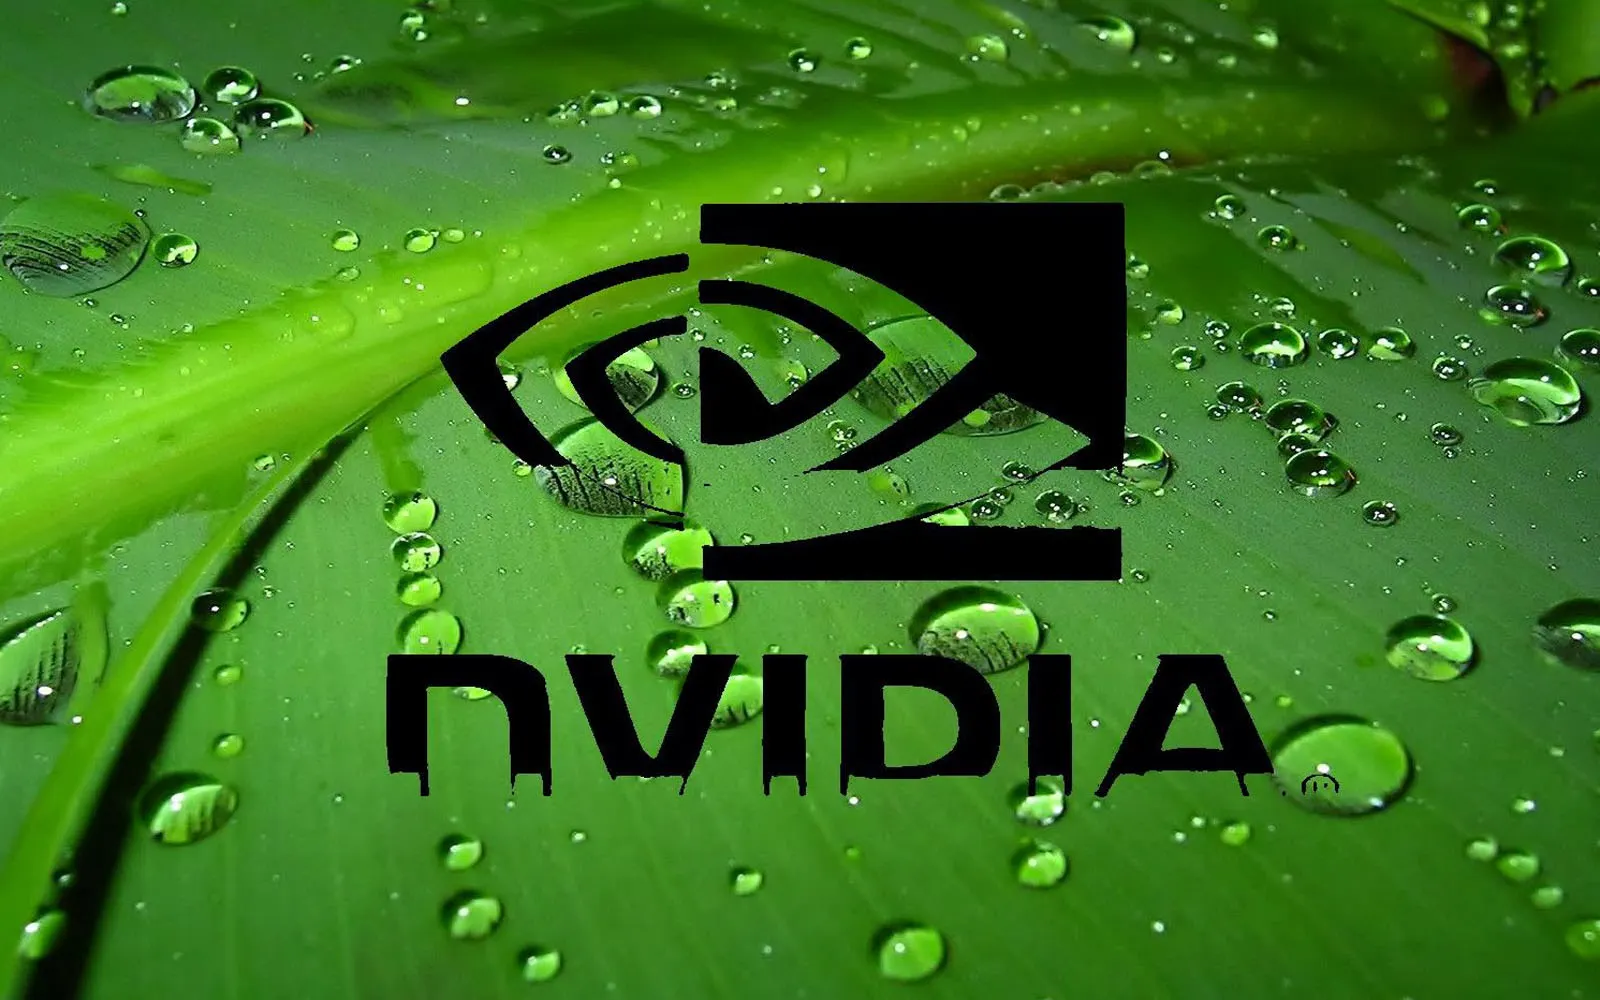 Logo von Nvidia auf grünem Grund mit Wassertropfen